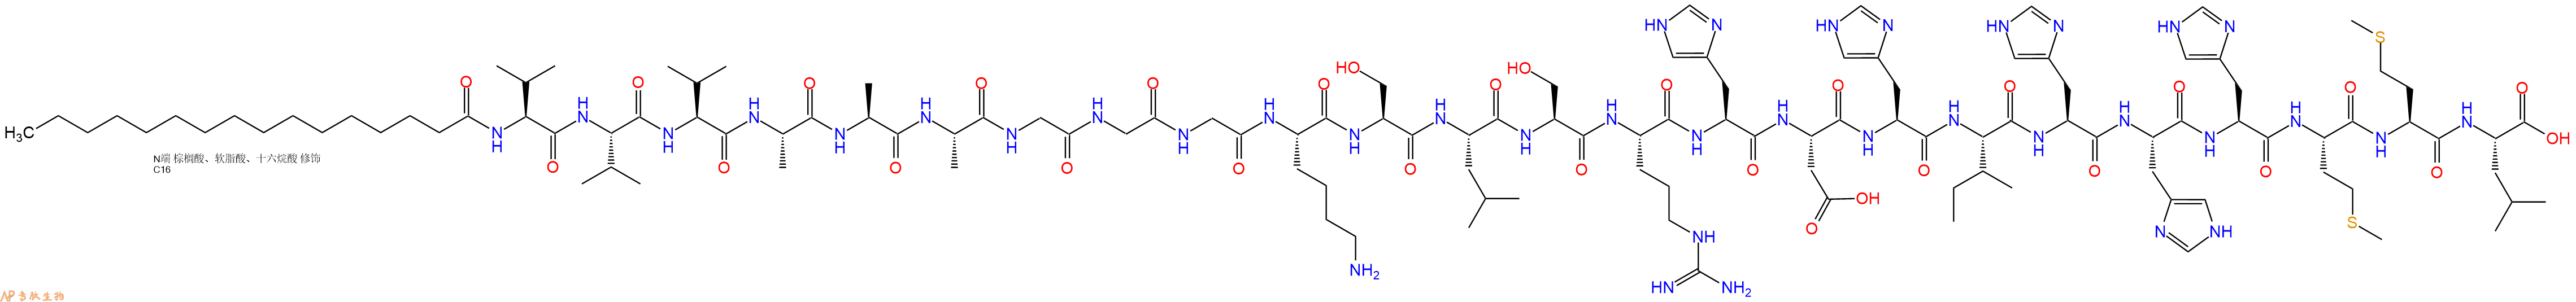 专肽生物产品棕榈酸-VVVAAAGGGKSLSRHDHIHHHMML